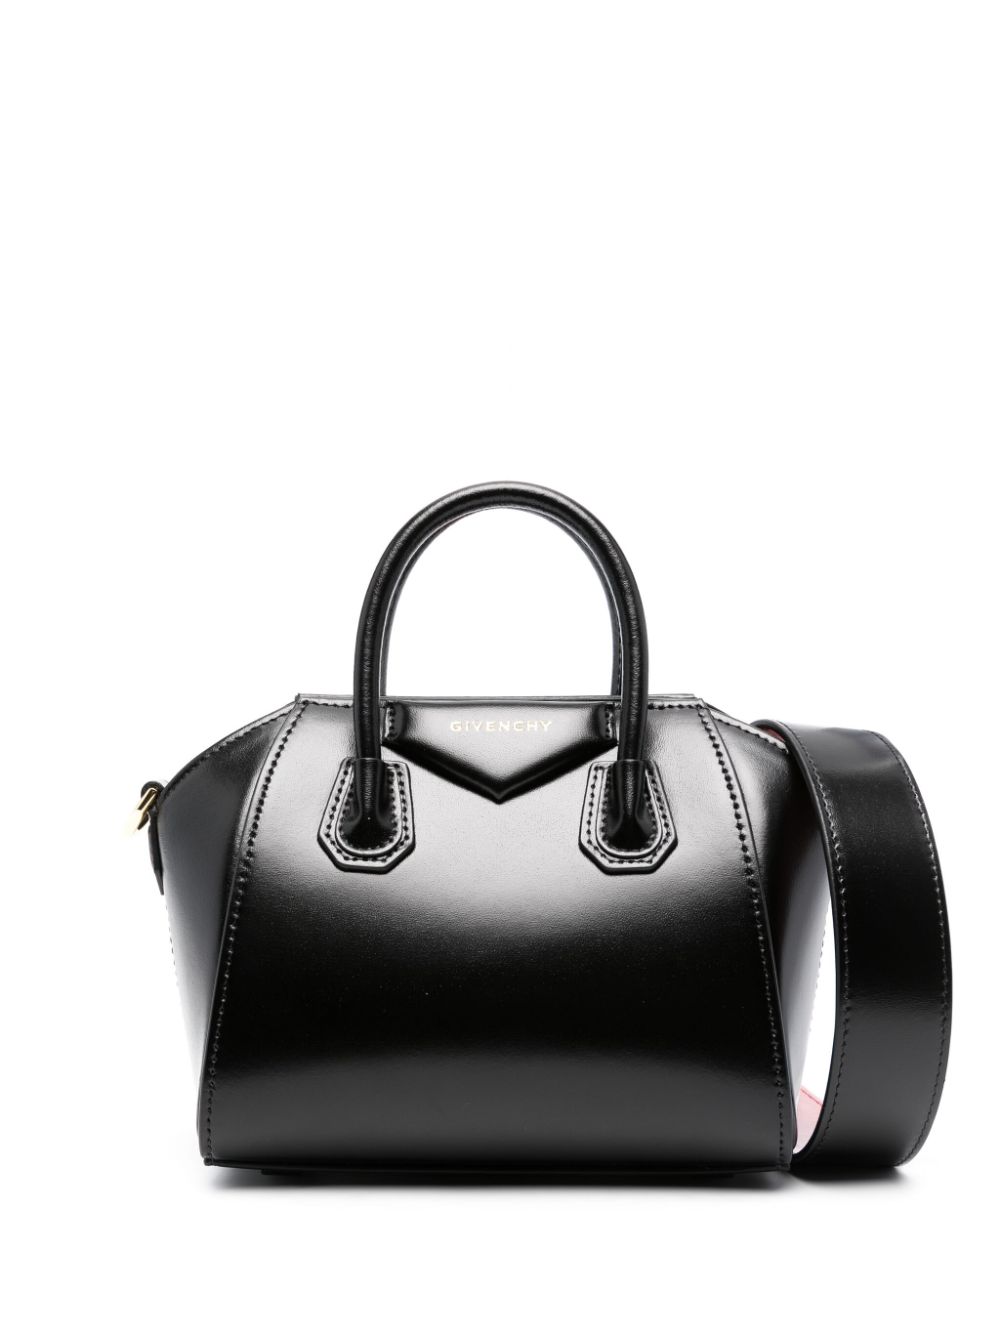 Givenchy Antigona mini leather tote bag - Black von Givenchy